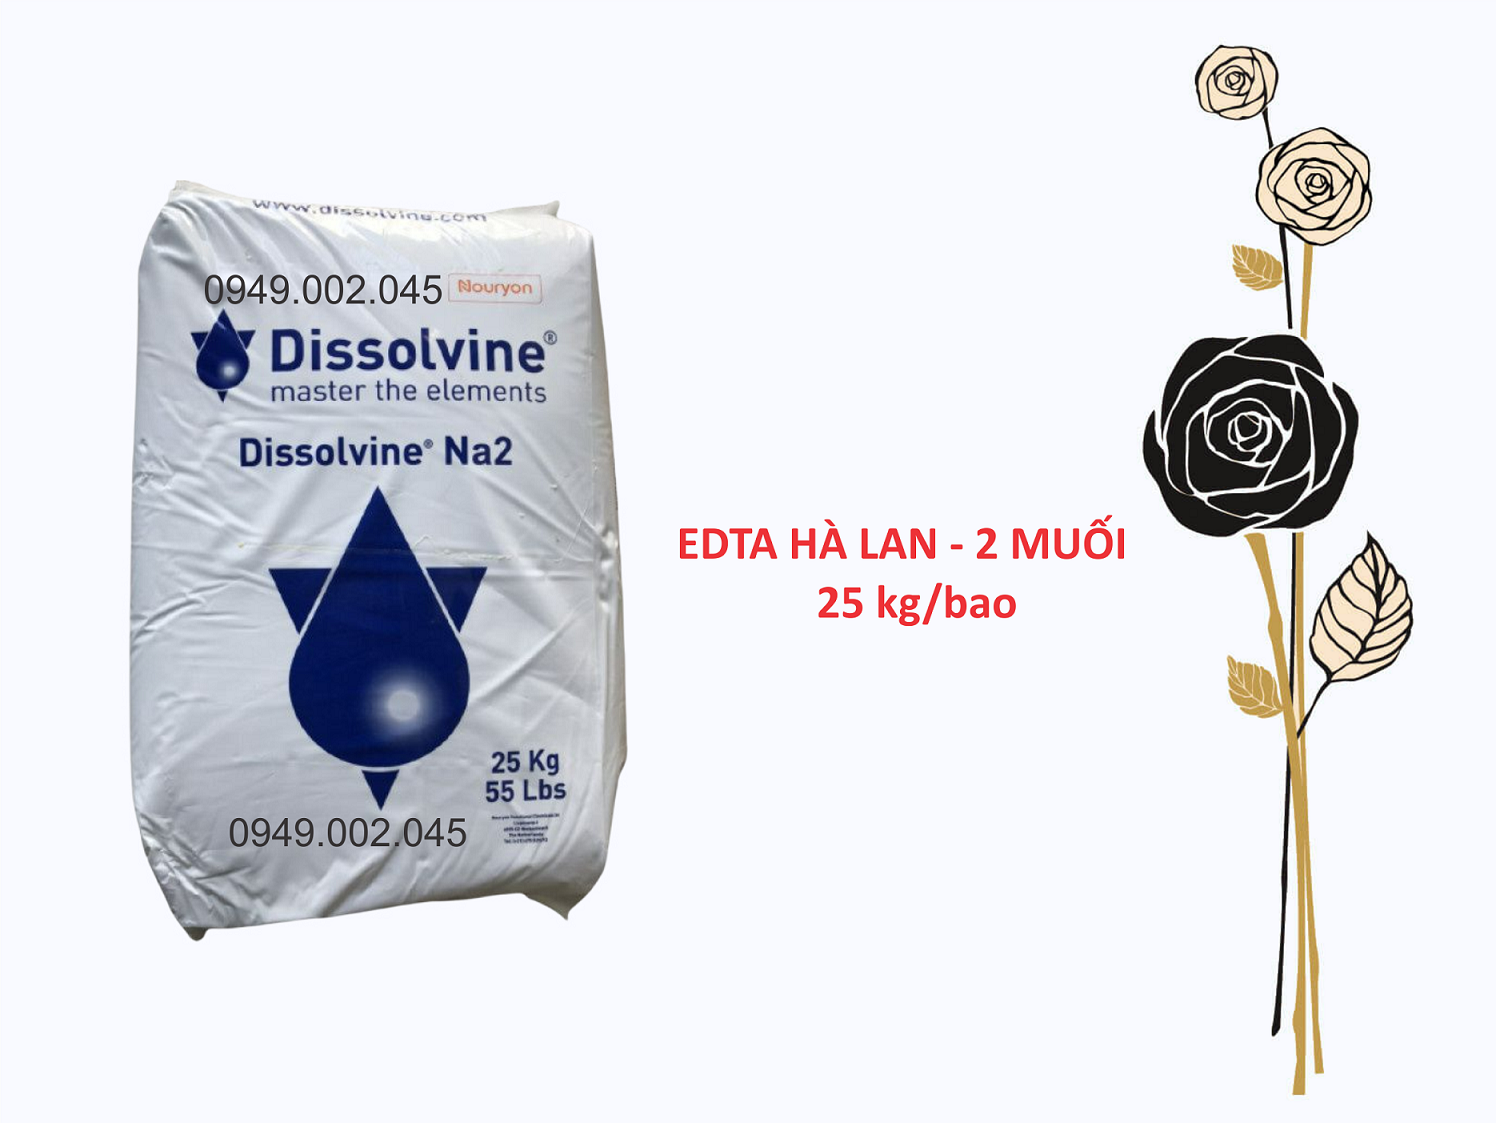 Dissolvine Na2 EDTA Hà Lan 2 muối giúp khử phèn ao nuôi